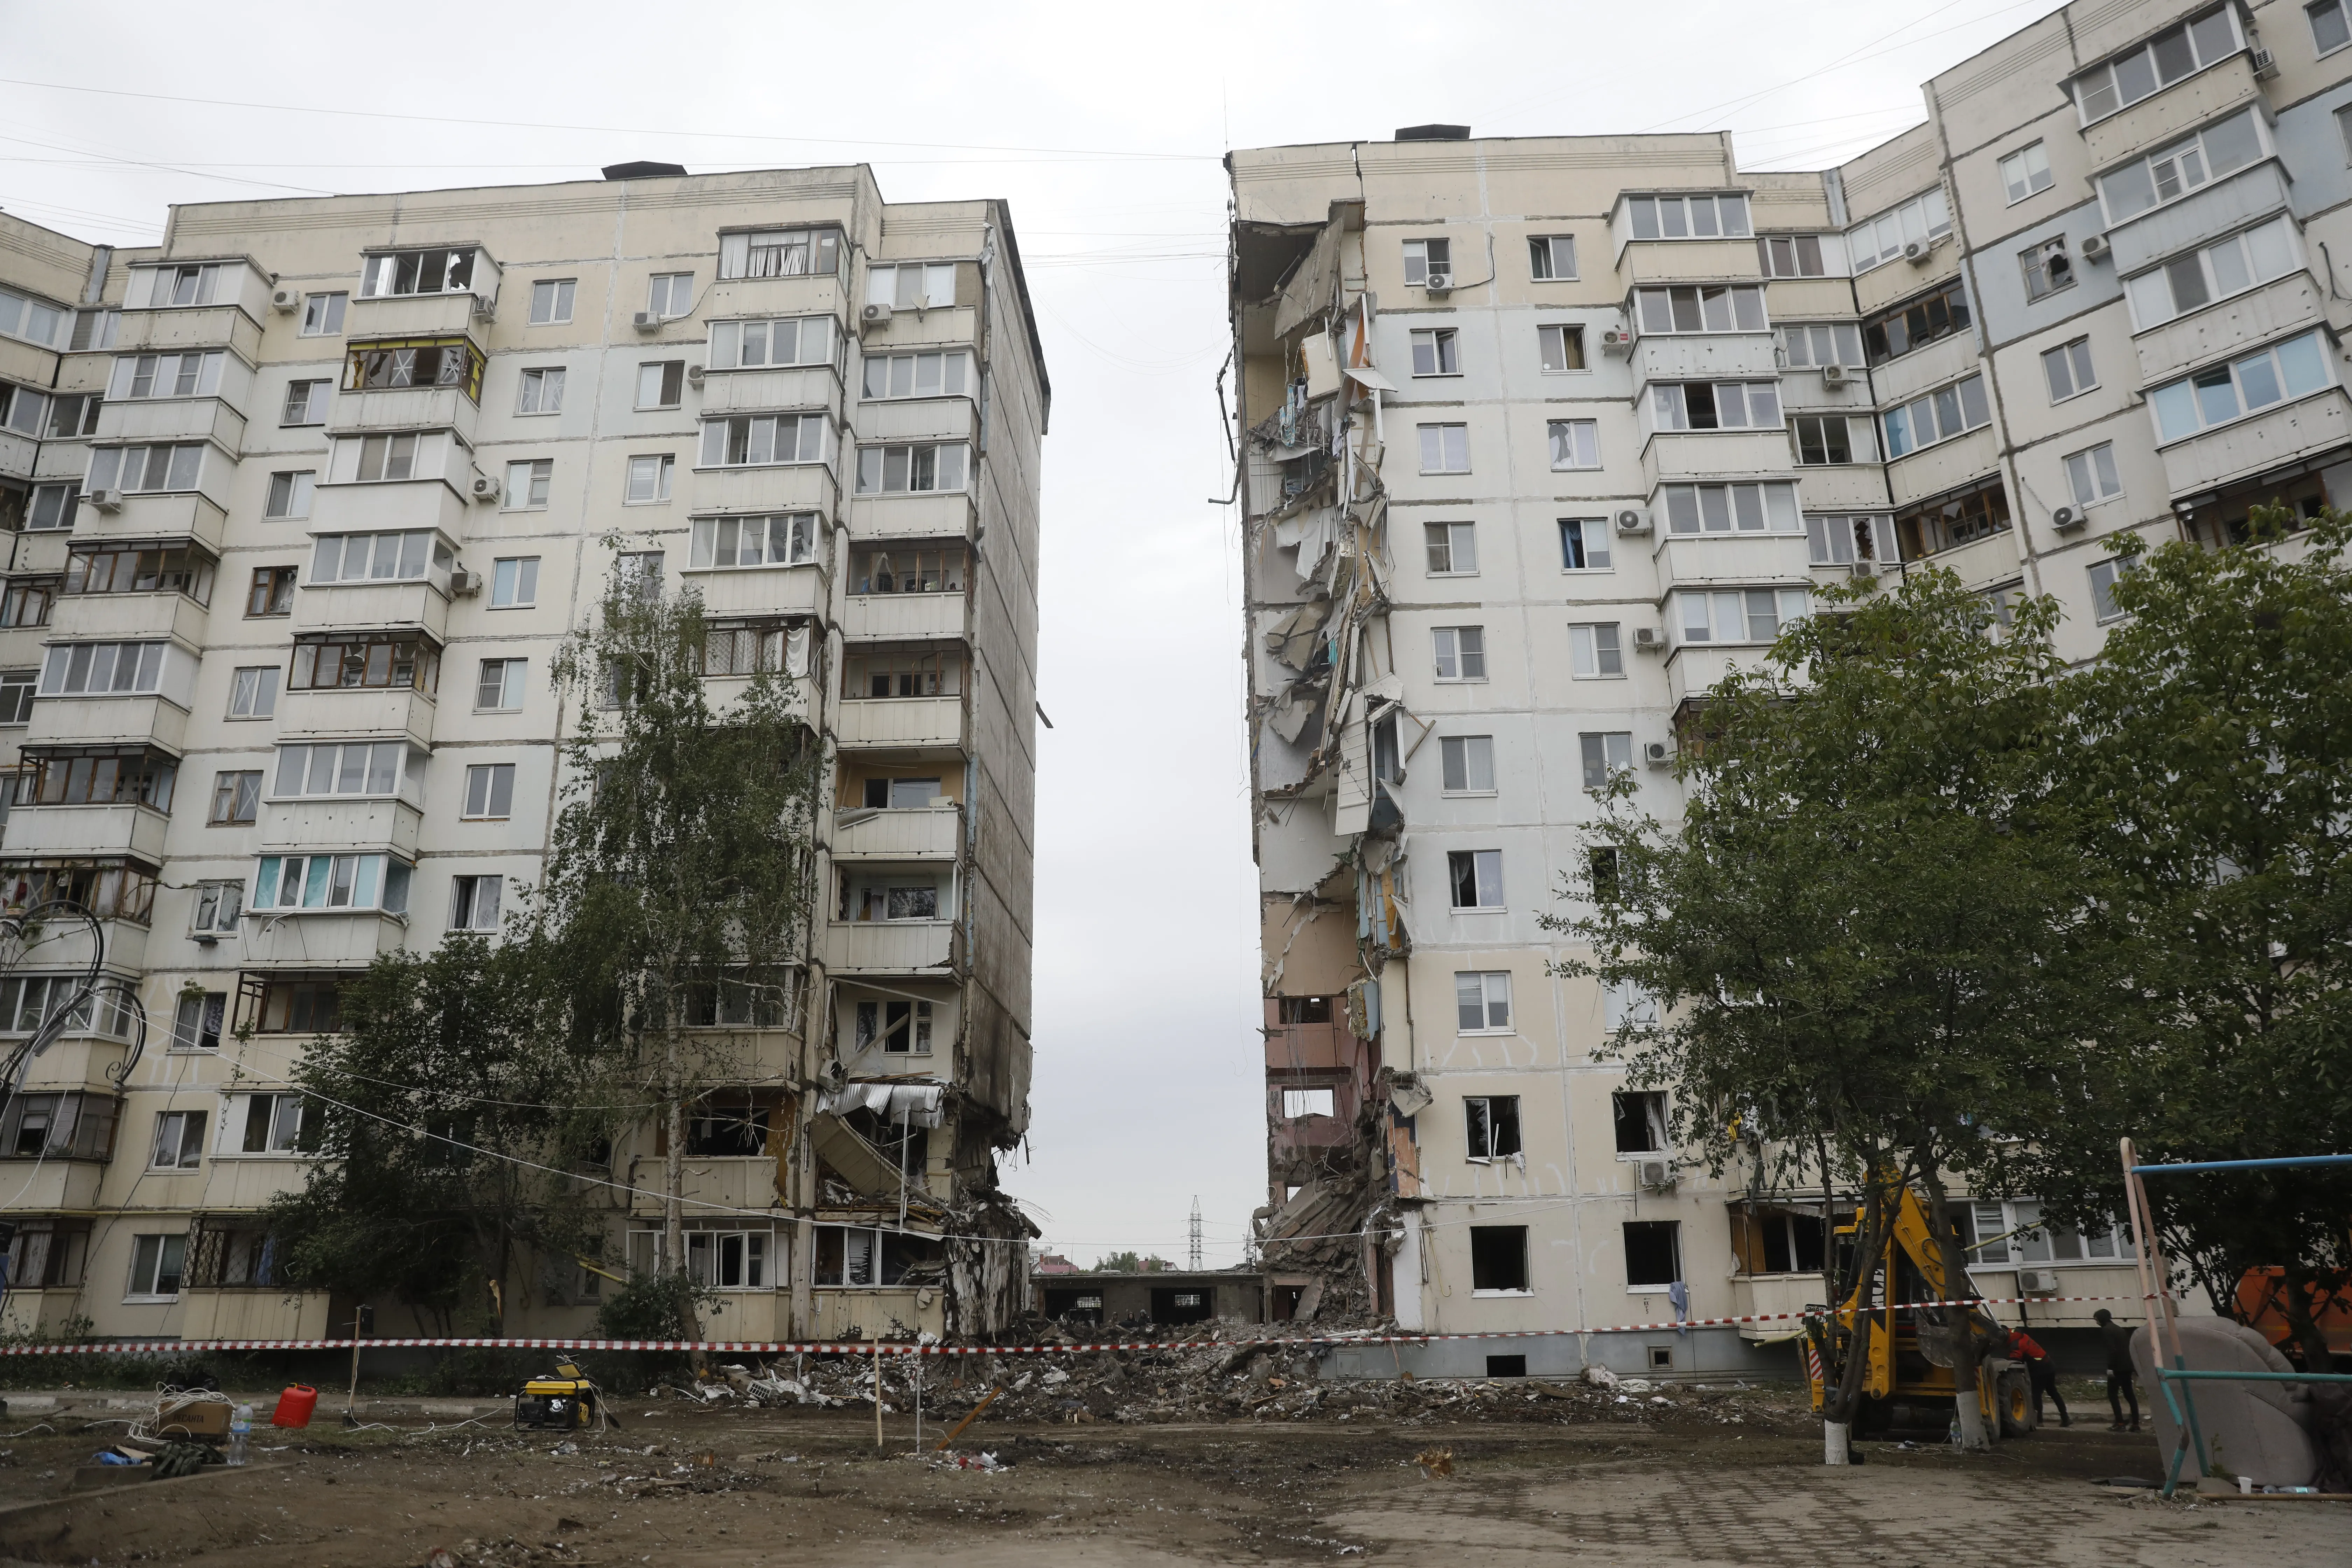 "Мы помогали под воем сирен": Почему атаки киевского режима не смогут сломить белгородцев